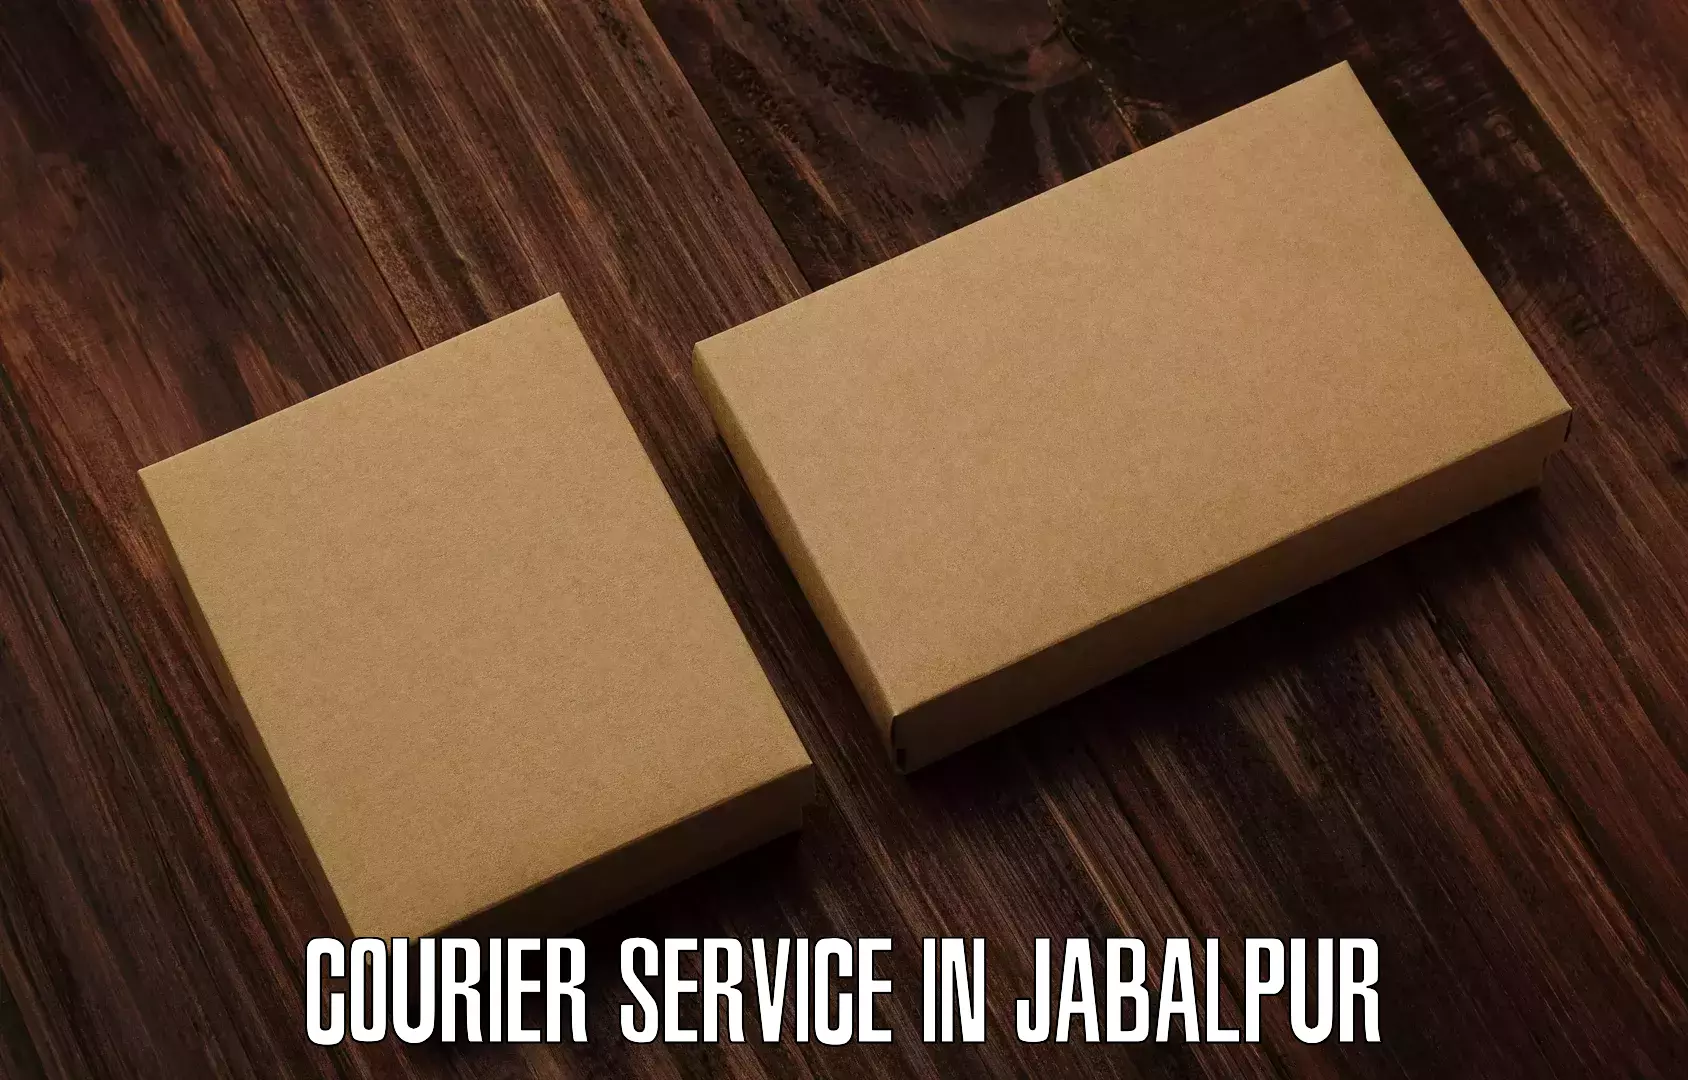 Courier insurance in Jabalpur